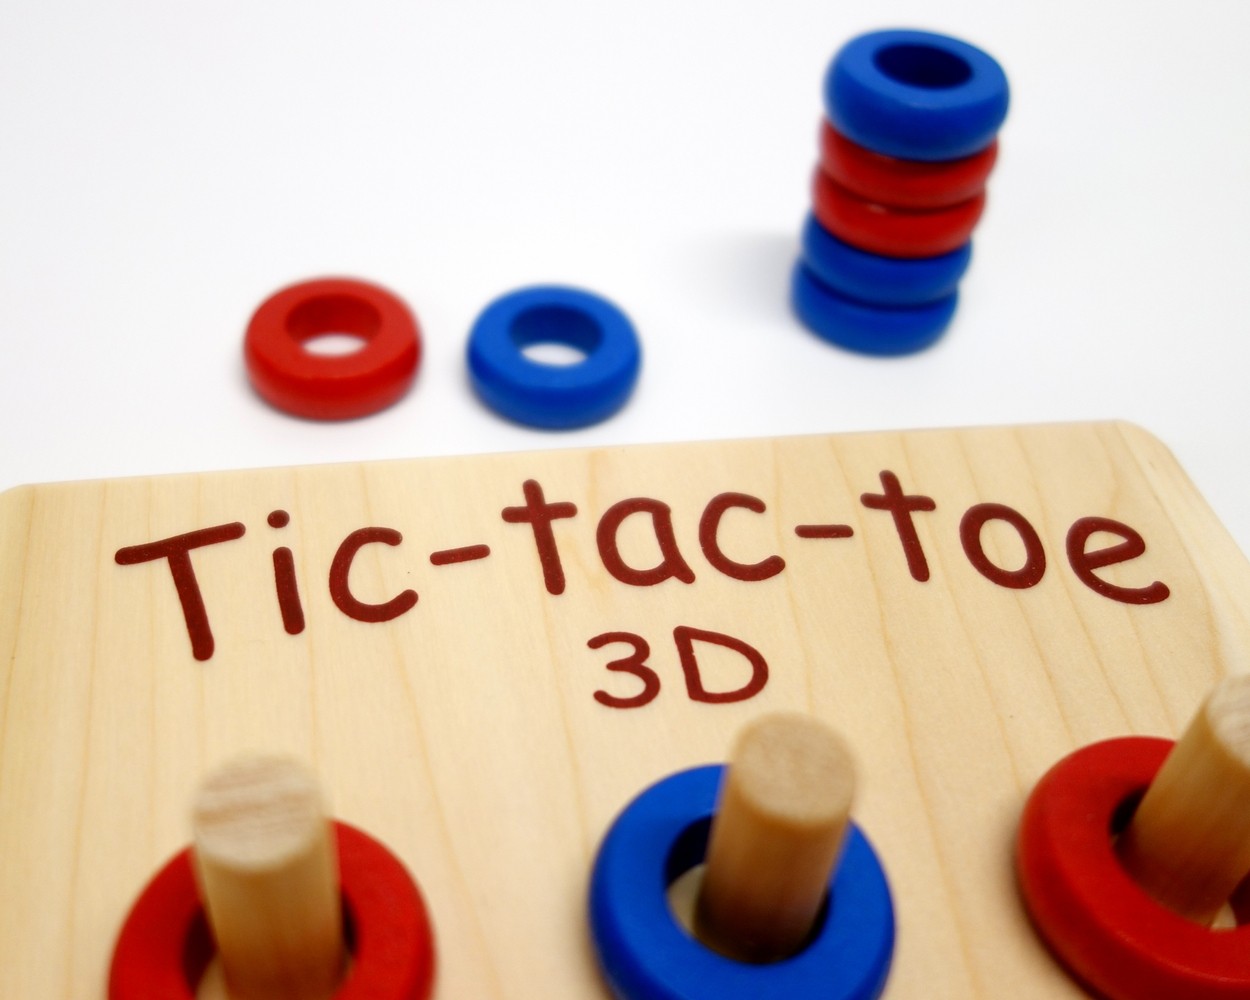 Tic-tac-toe 3D